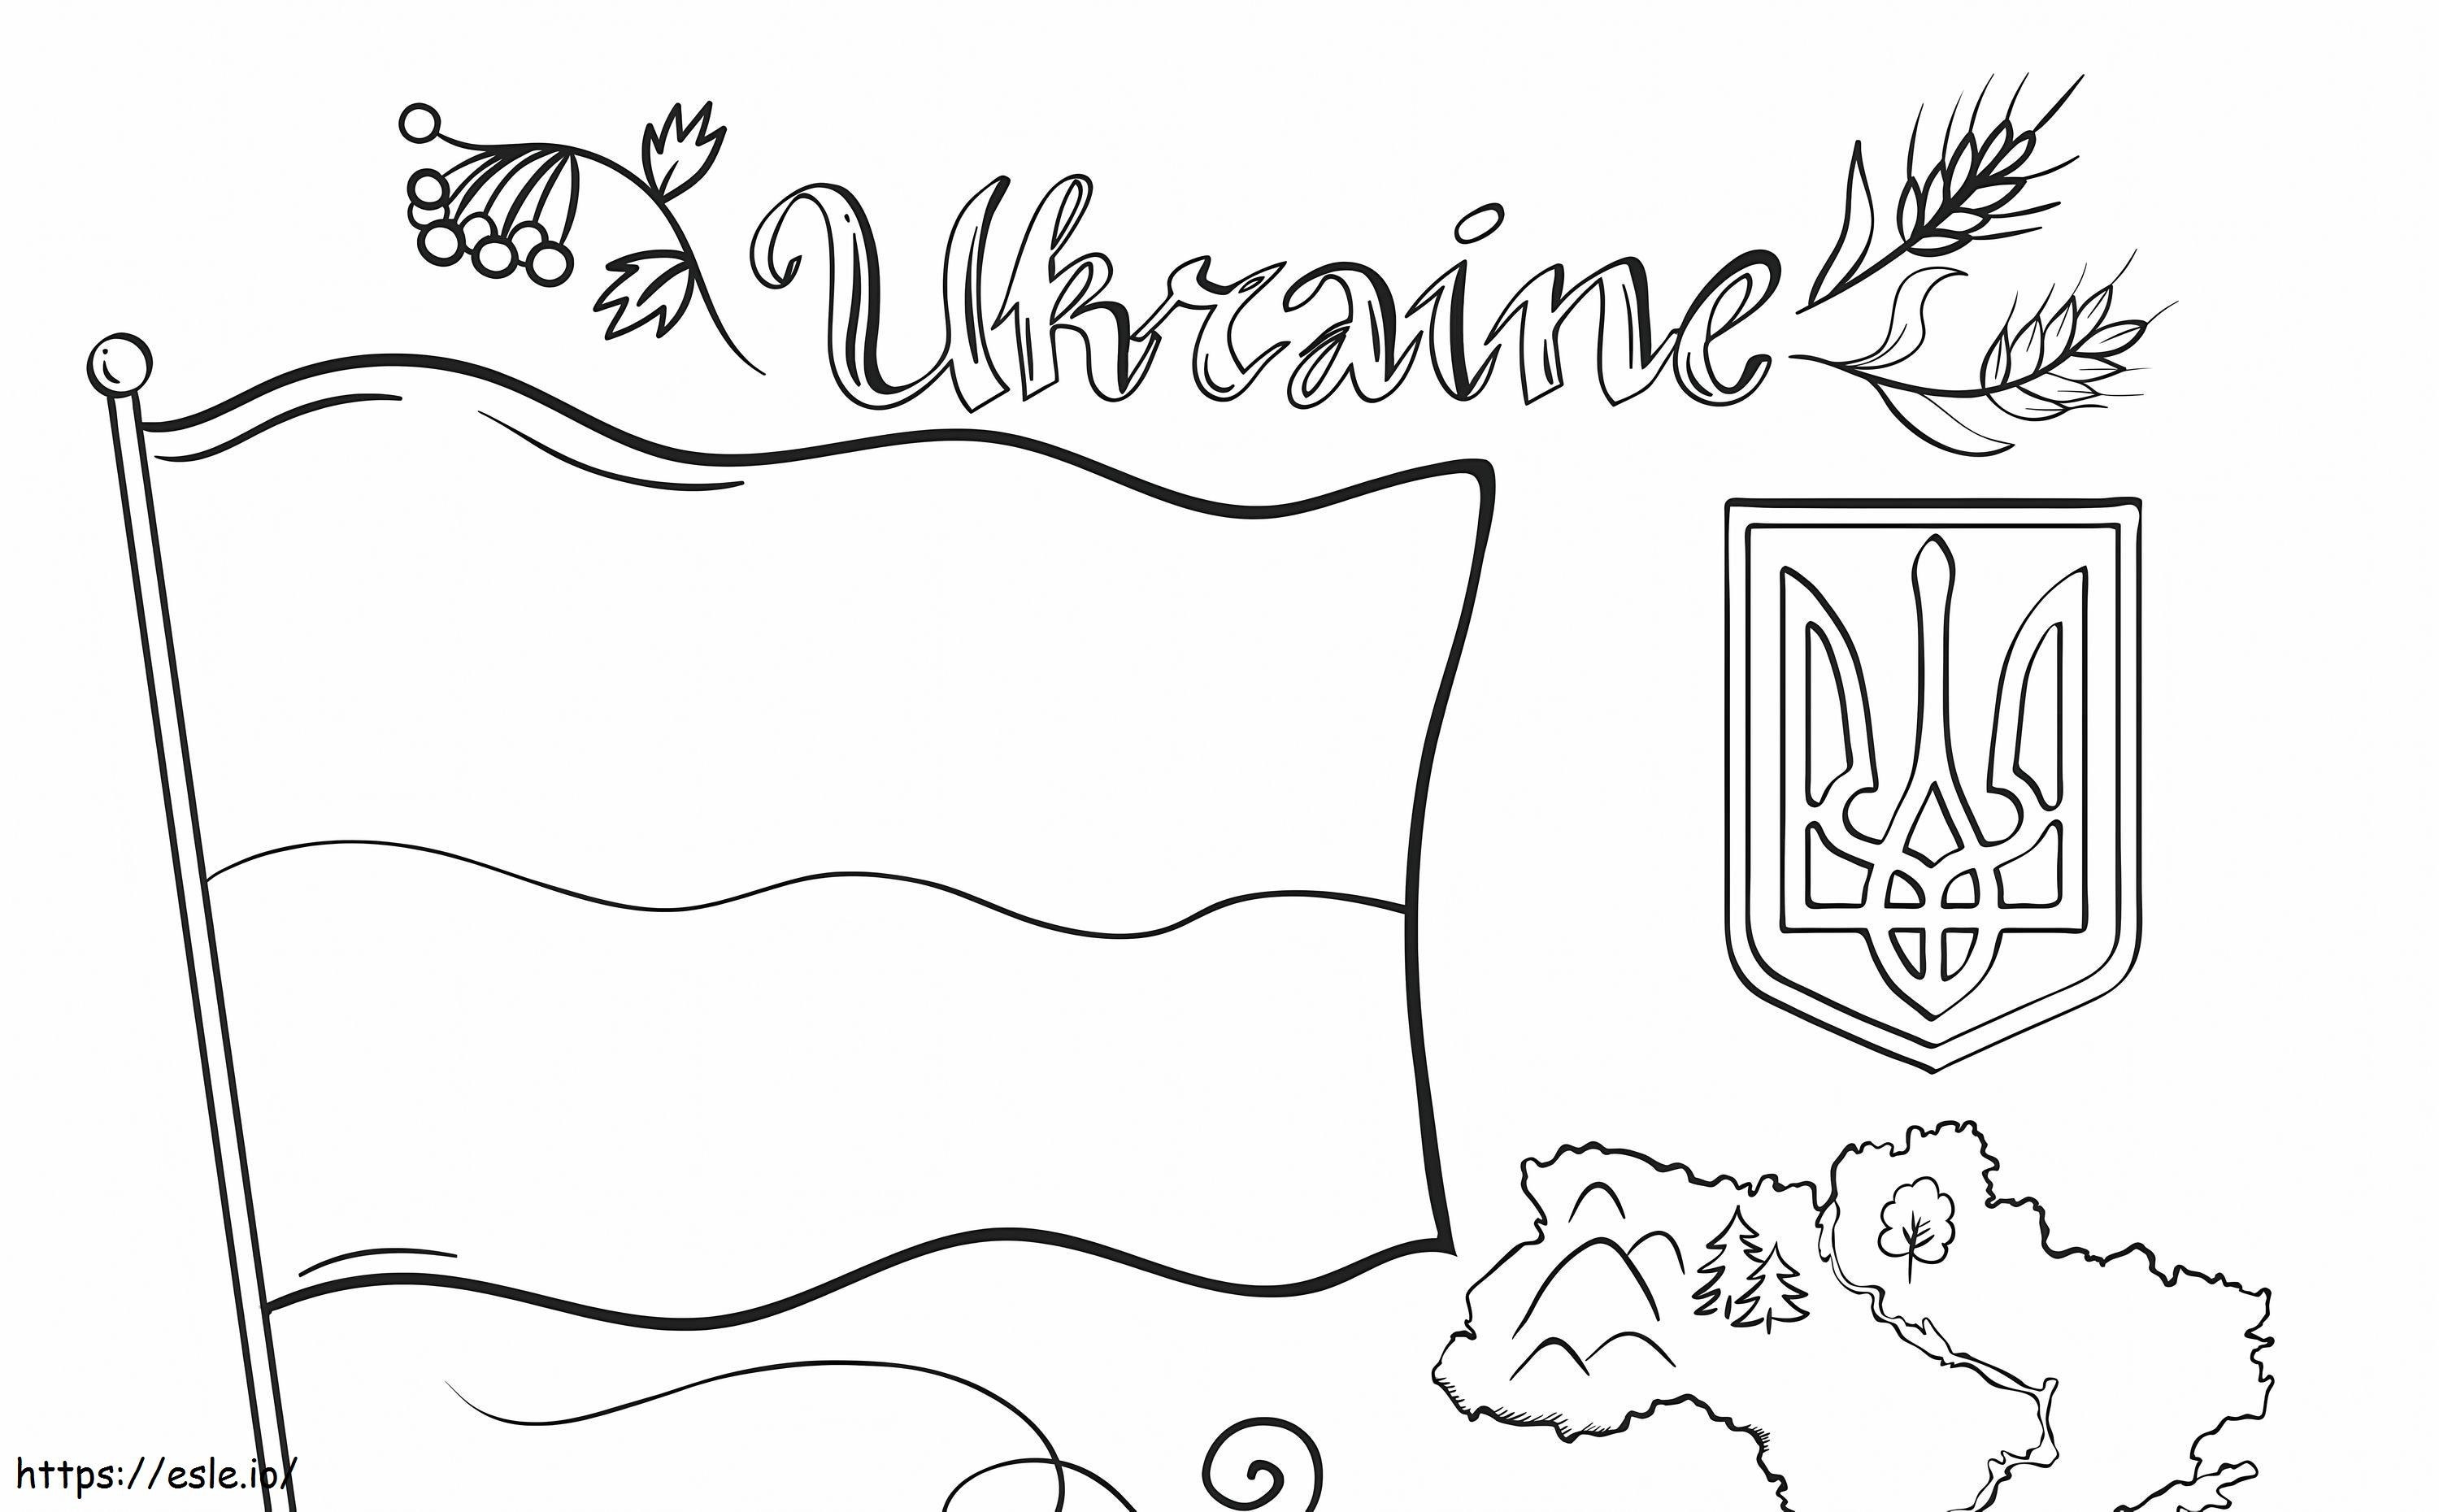 Bandiera e mappa dell'Ucraina da colorare